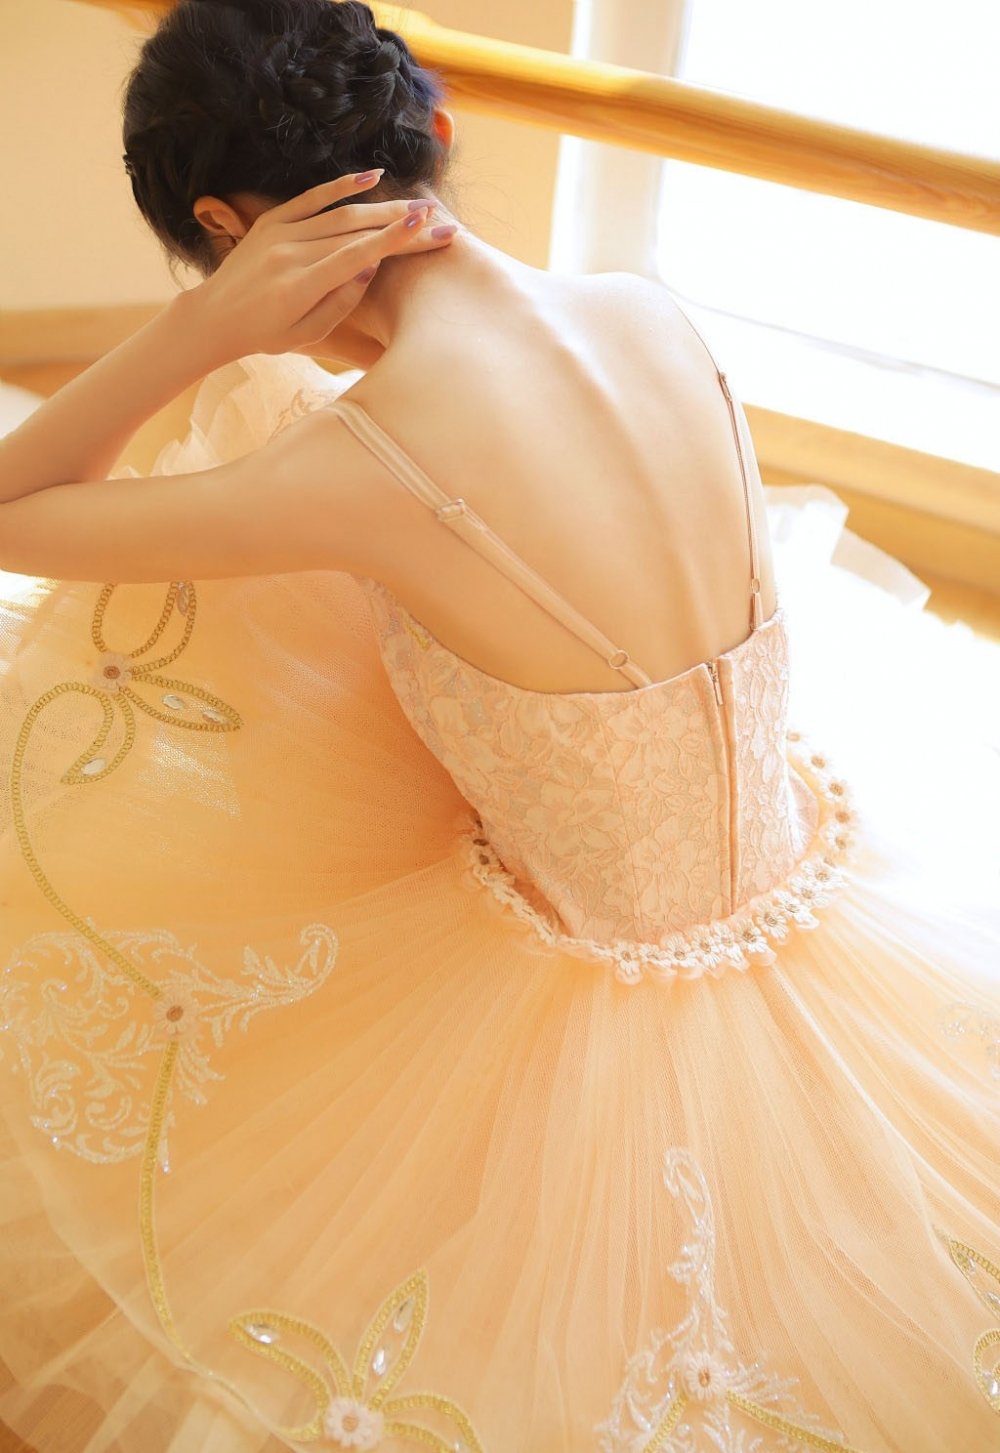 芭蕾舞美女翩翩舞裙迷人玉颈写真